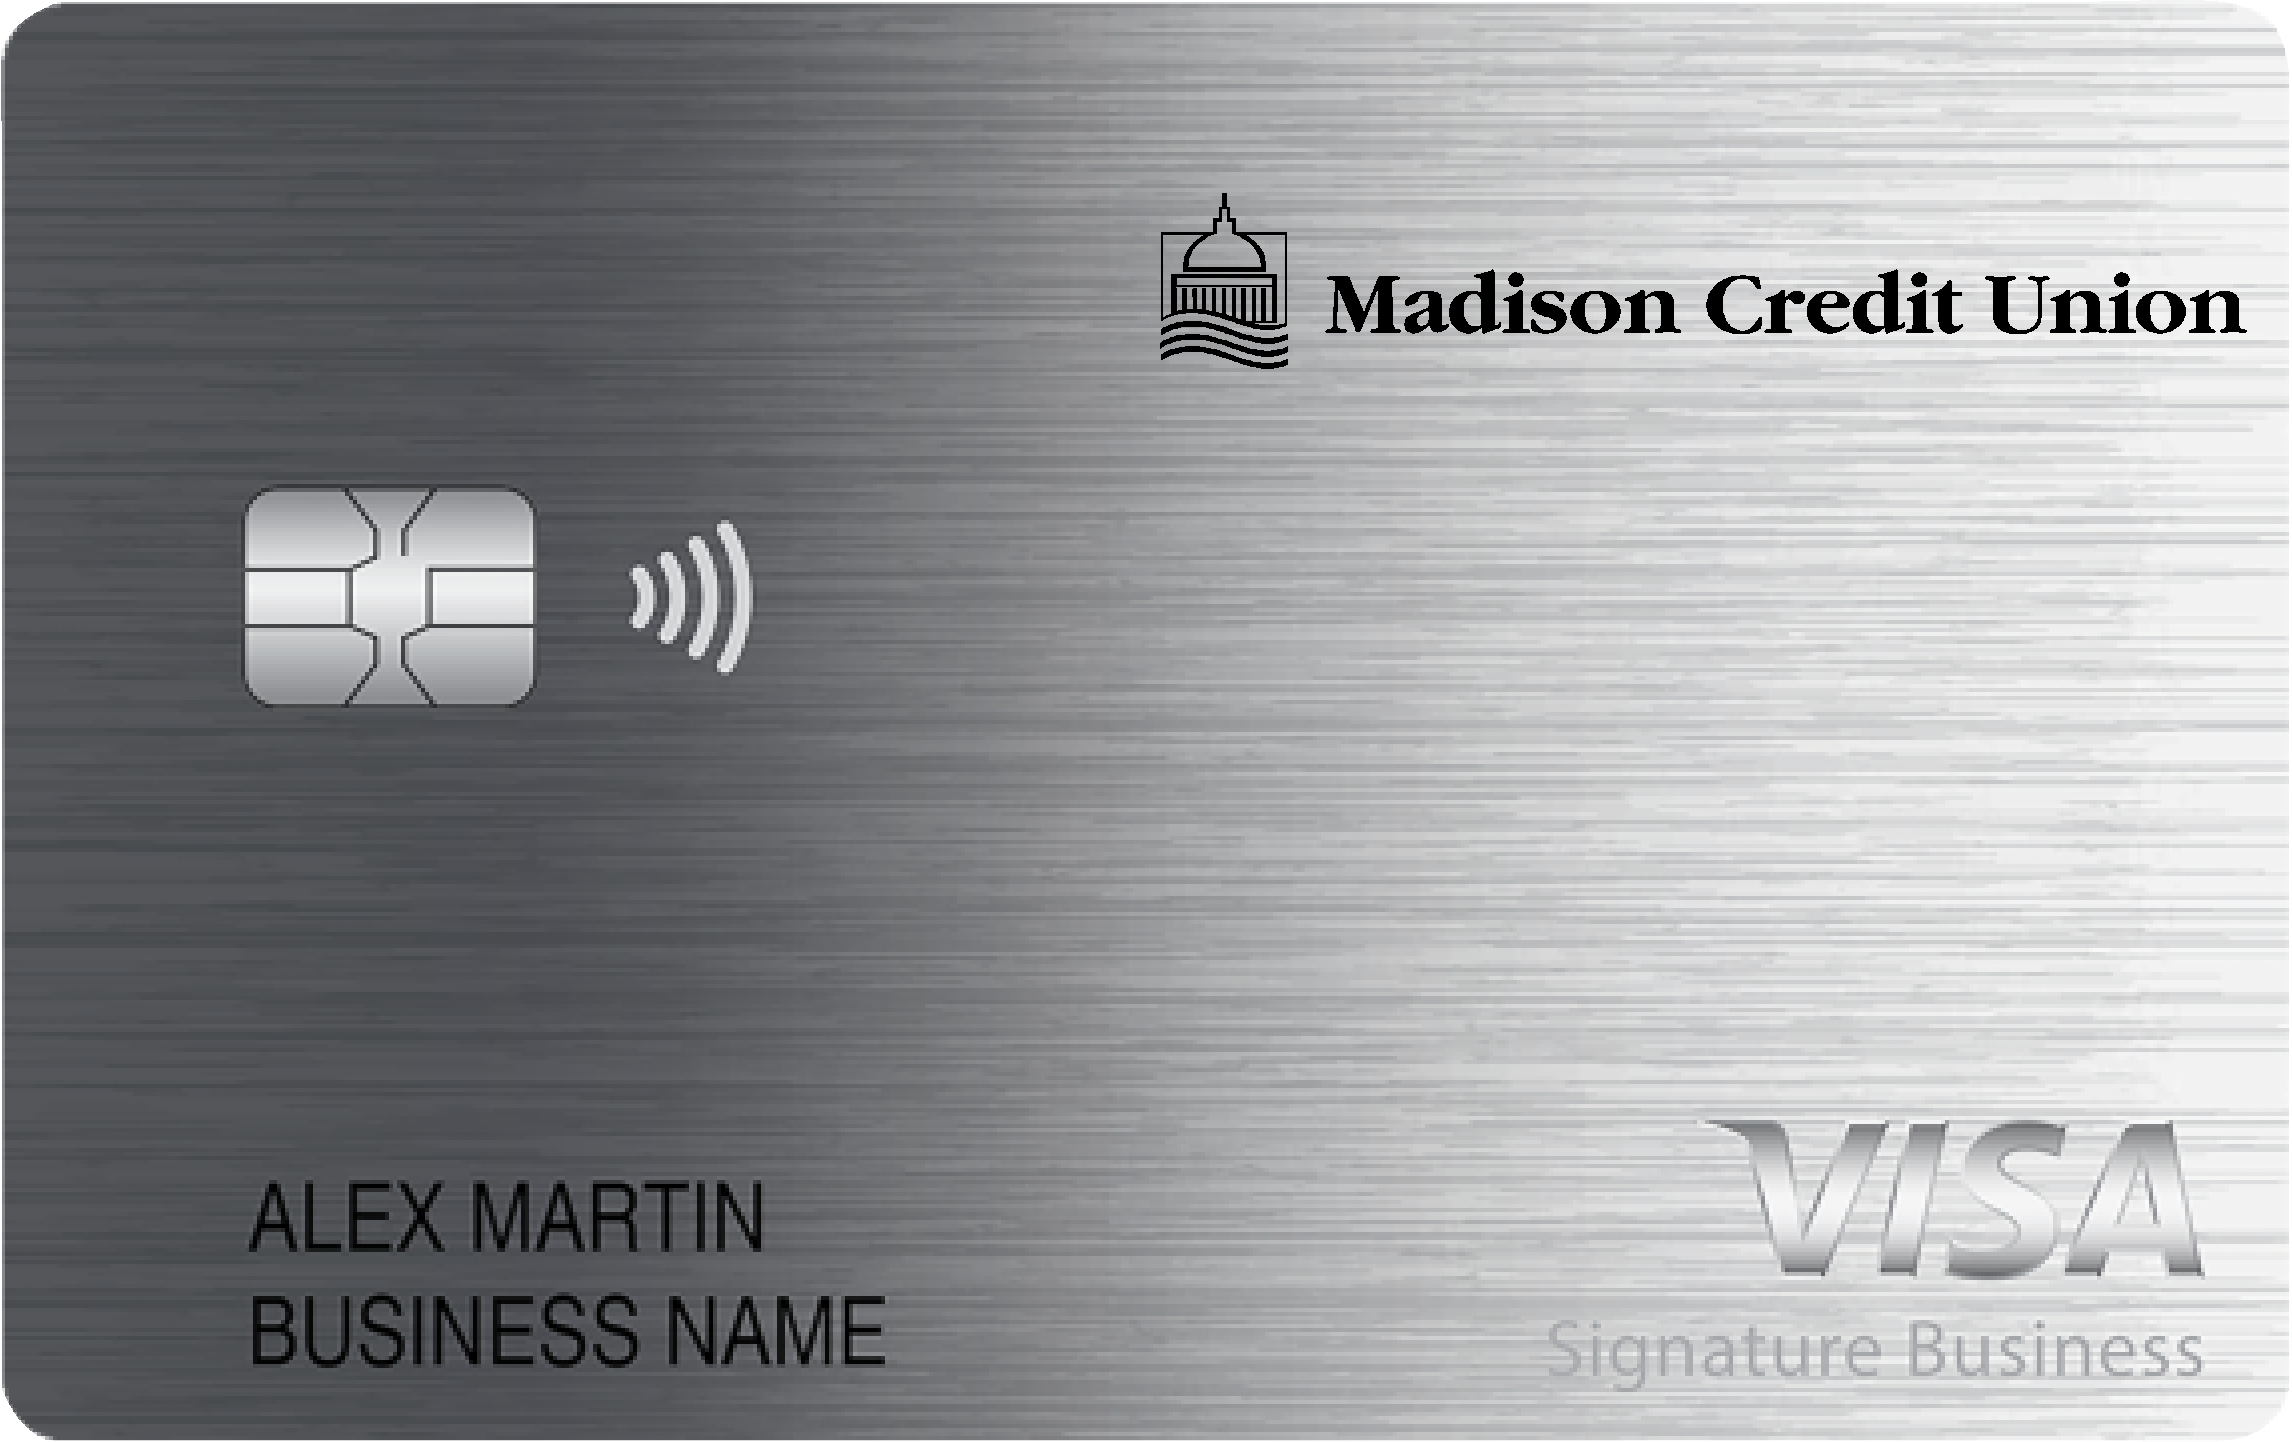 Madison Credit Union